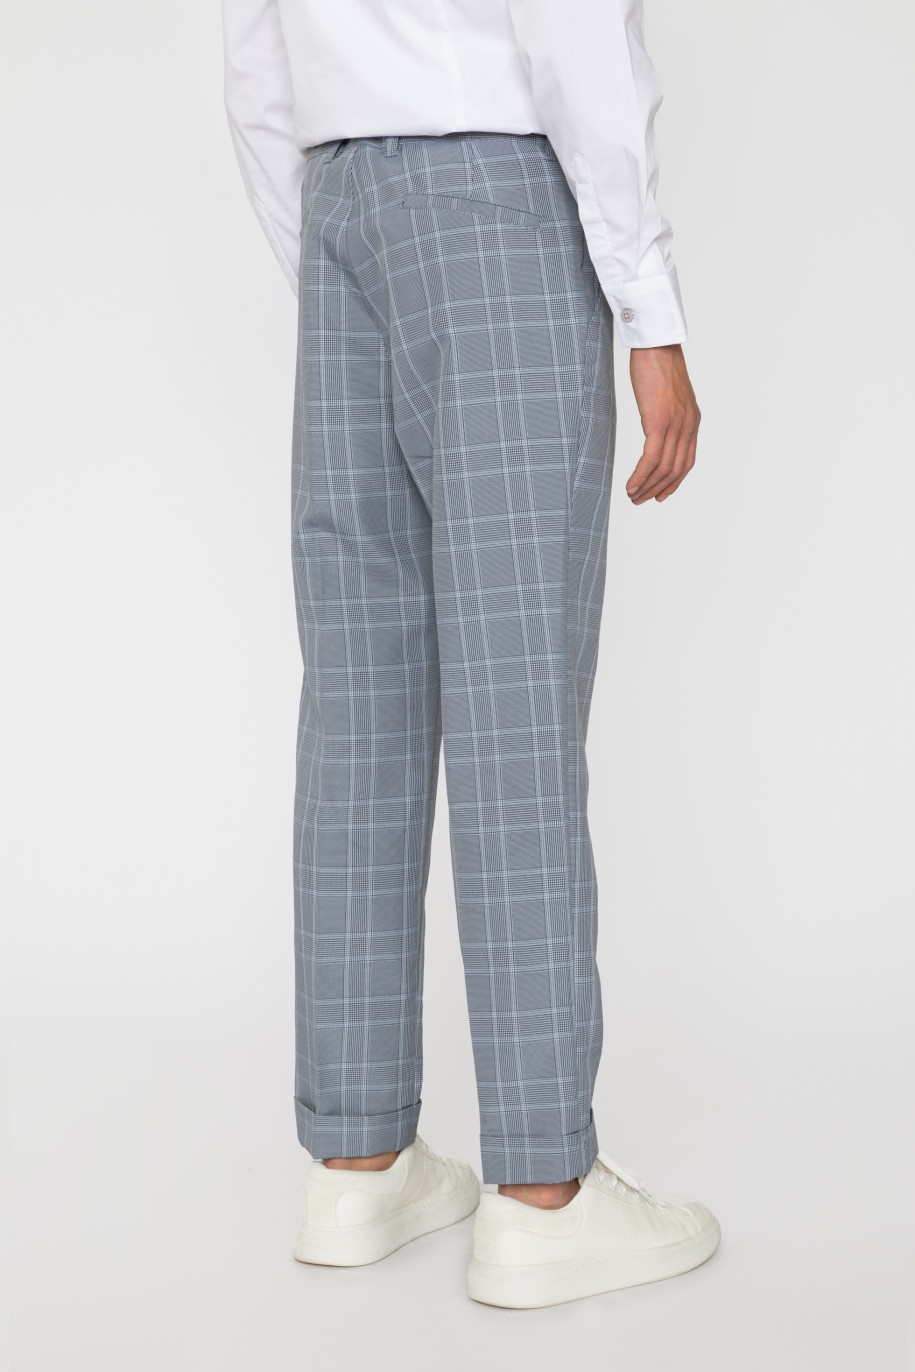 Eleganckie spodnie garniturowe w kratę dla chłopaka - 33591